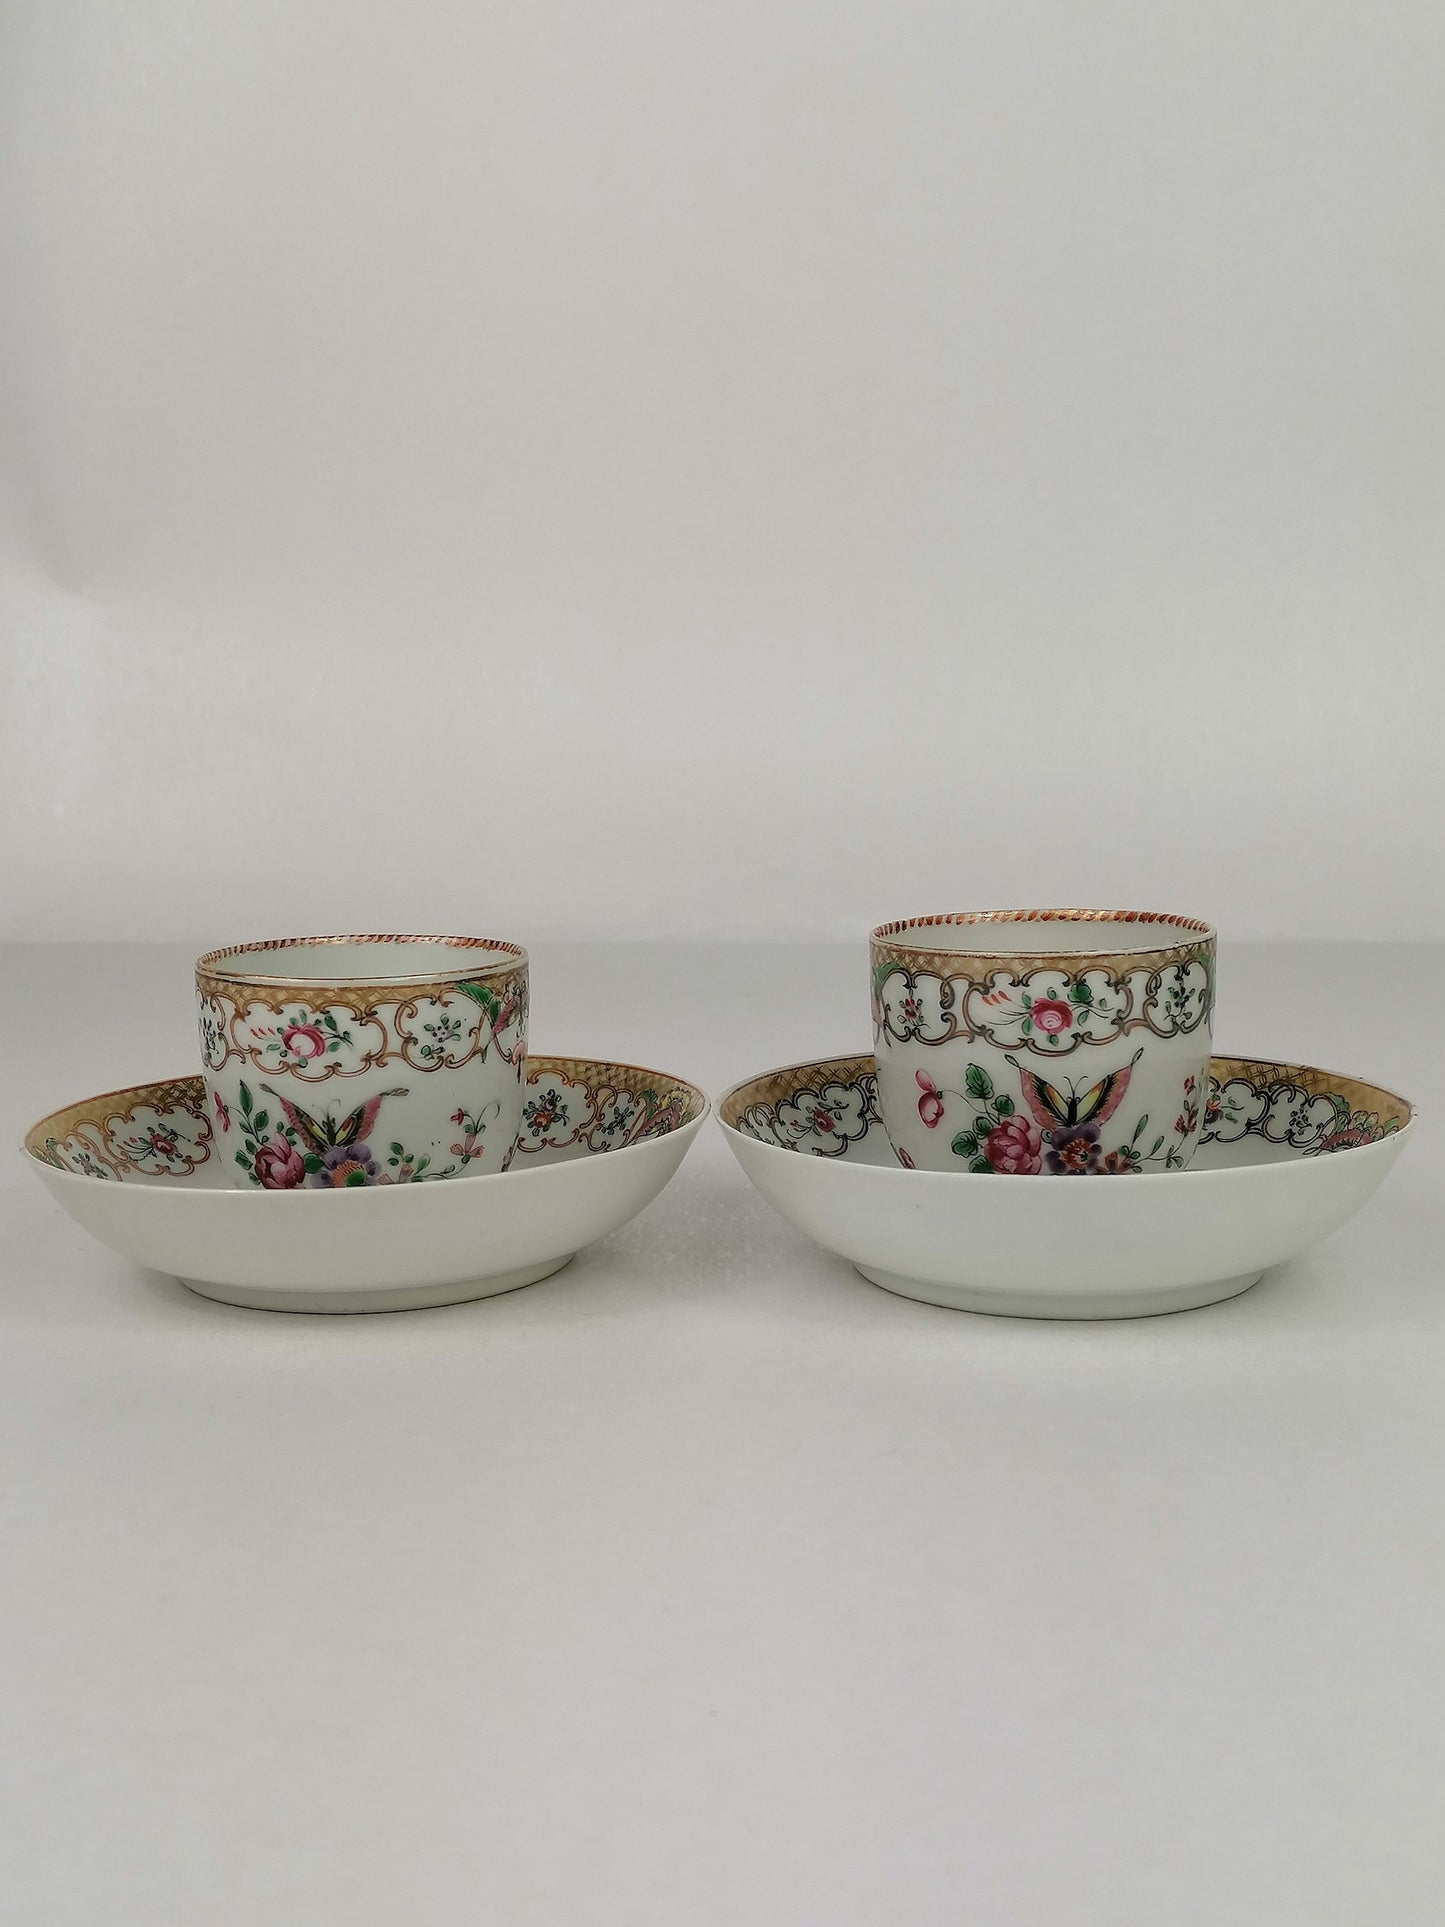 Bộ 2 tách trà và đĩa cổ Trung Quốc // thế kỷ 18 // triều đại nhà Thanh